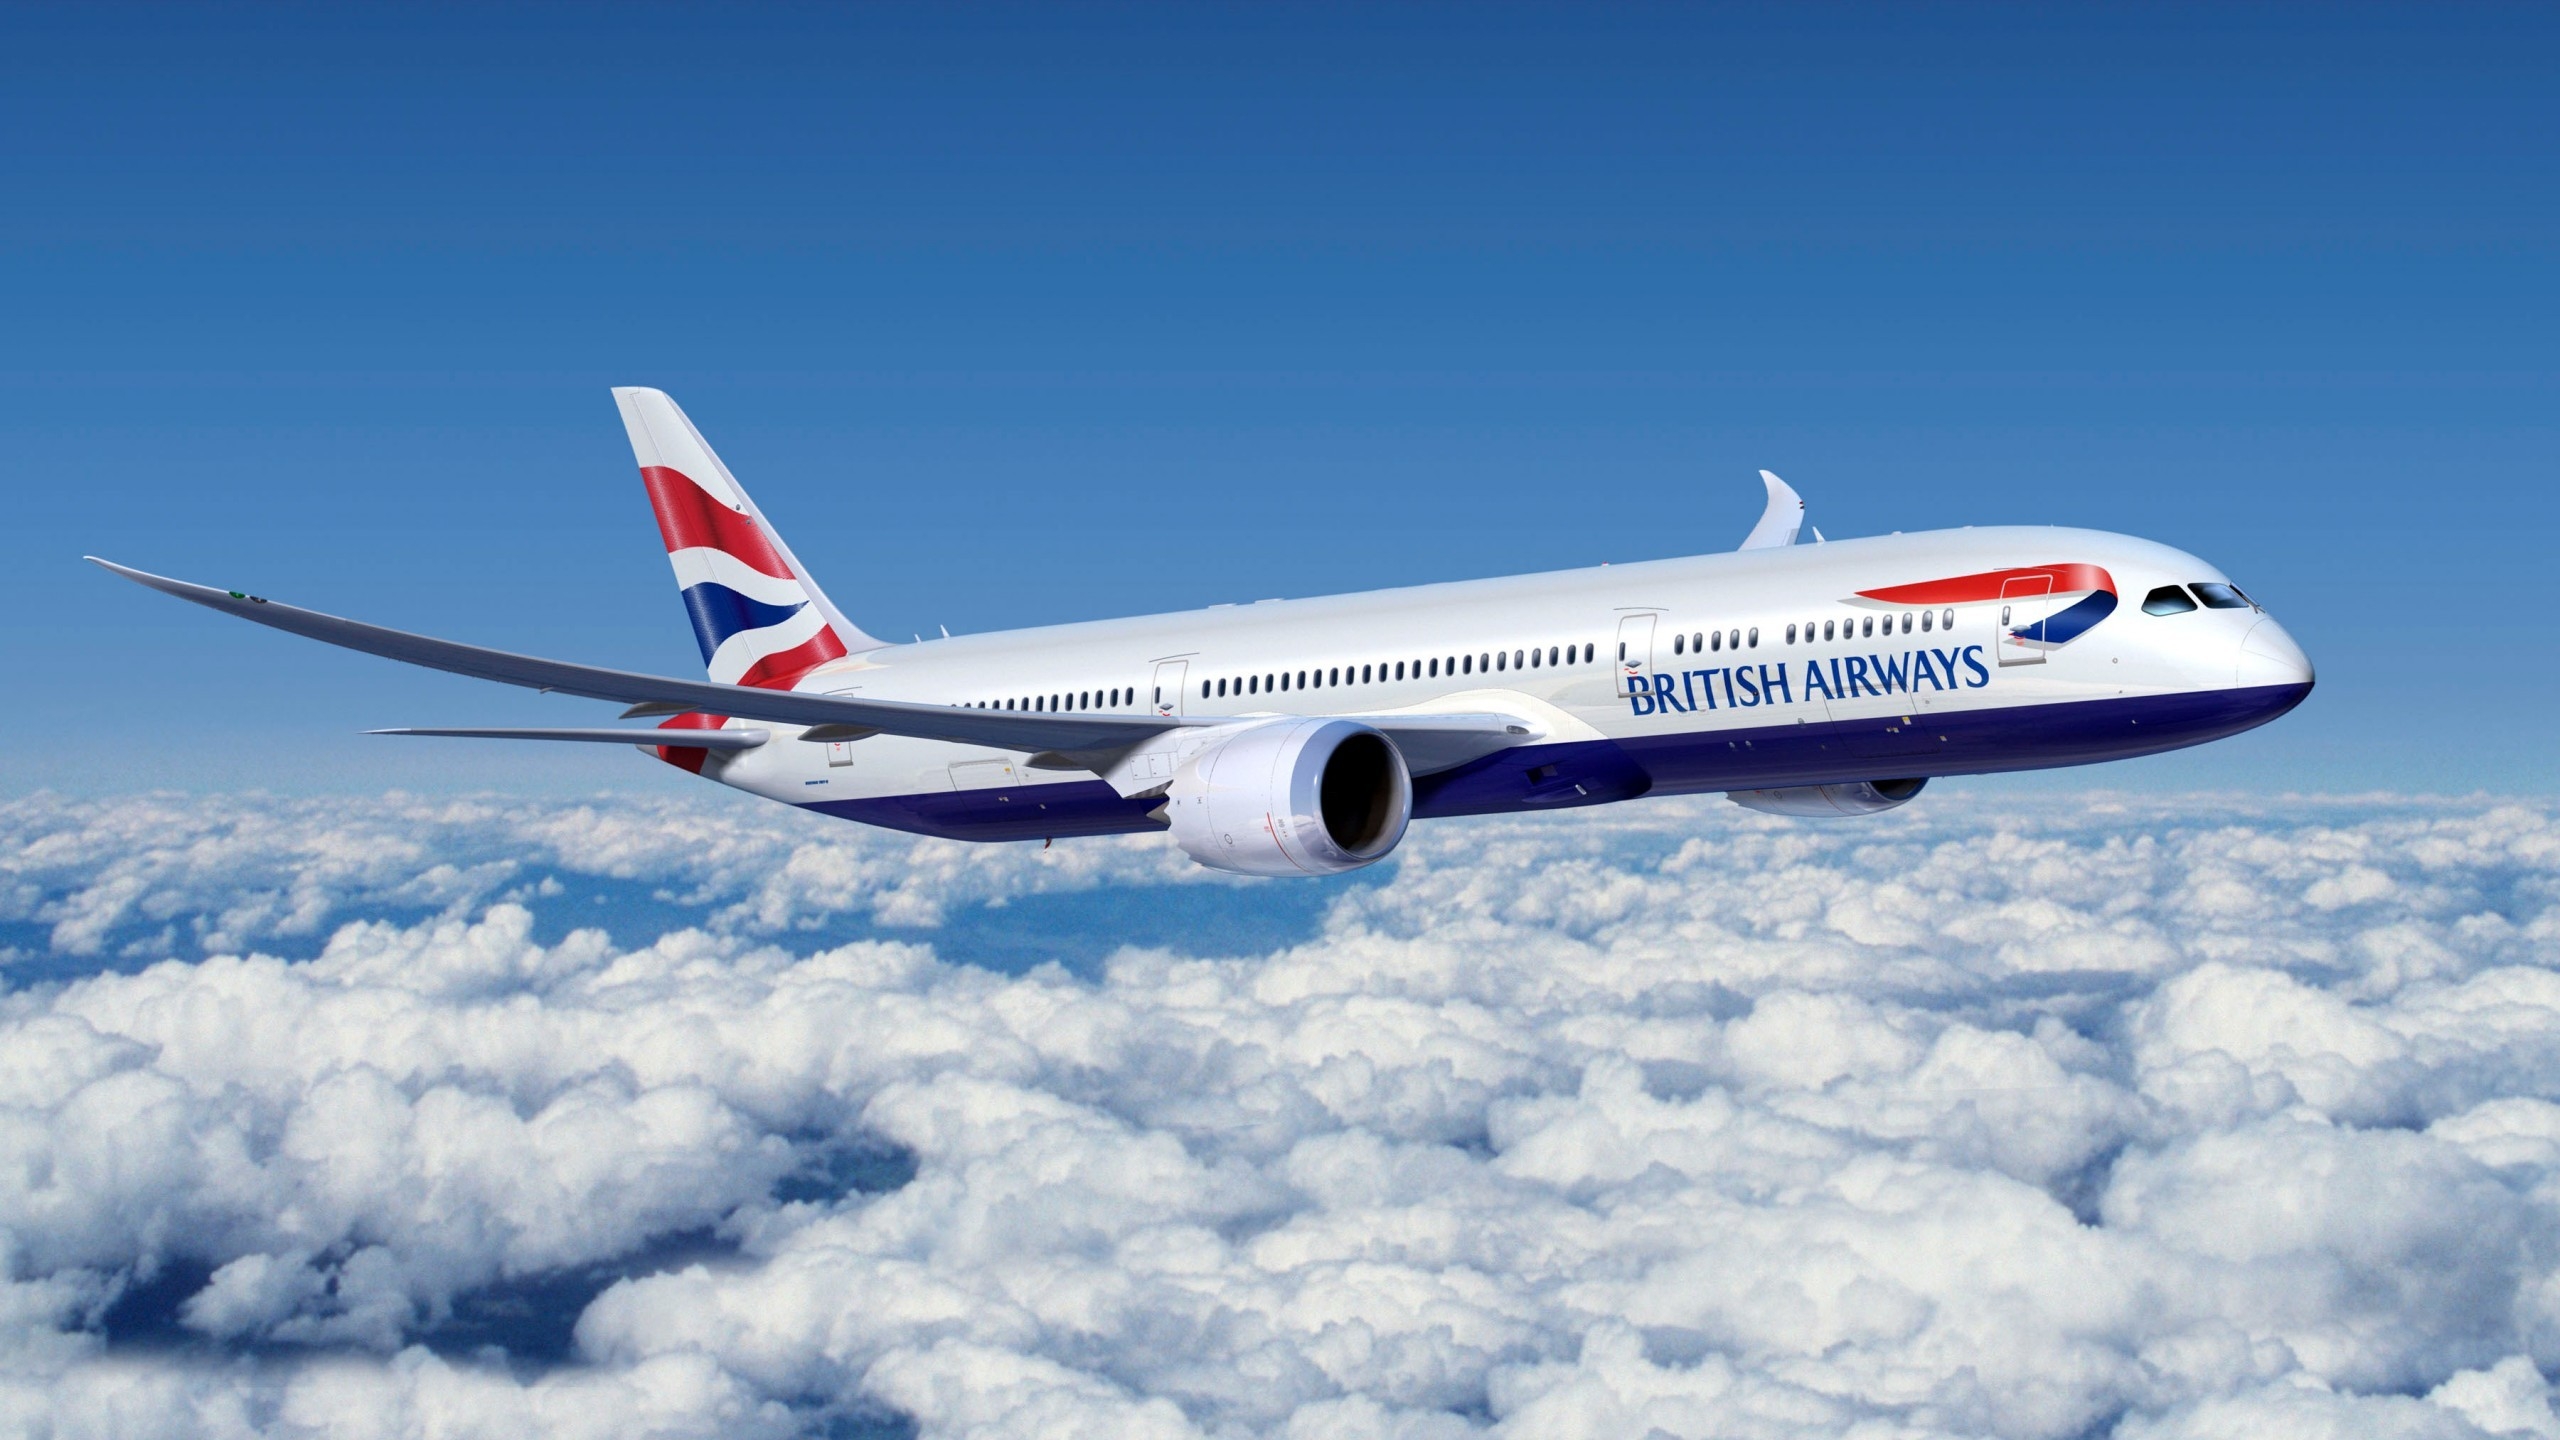 Boeing 777 British Airways for 2560x1440 HDTV resolution